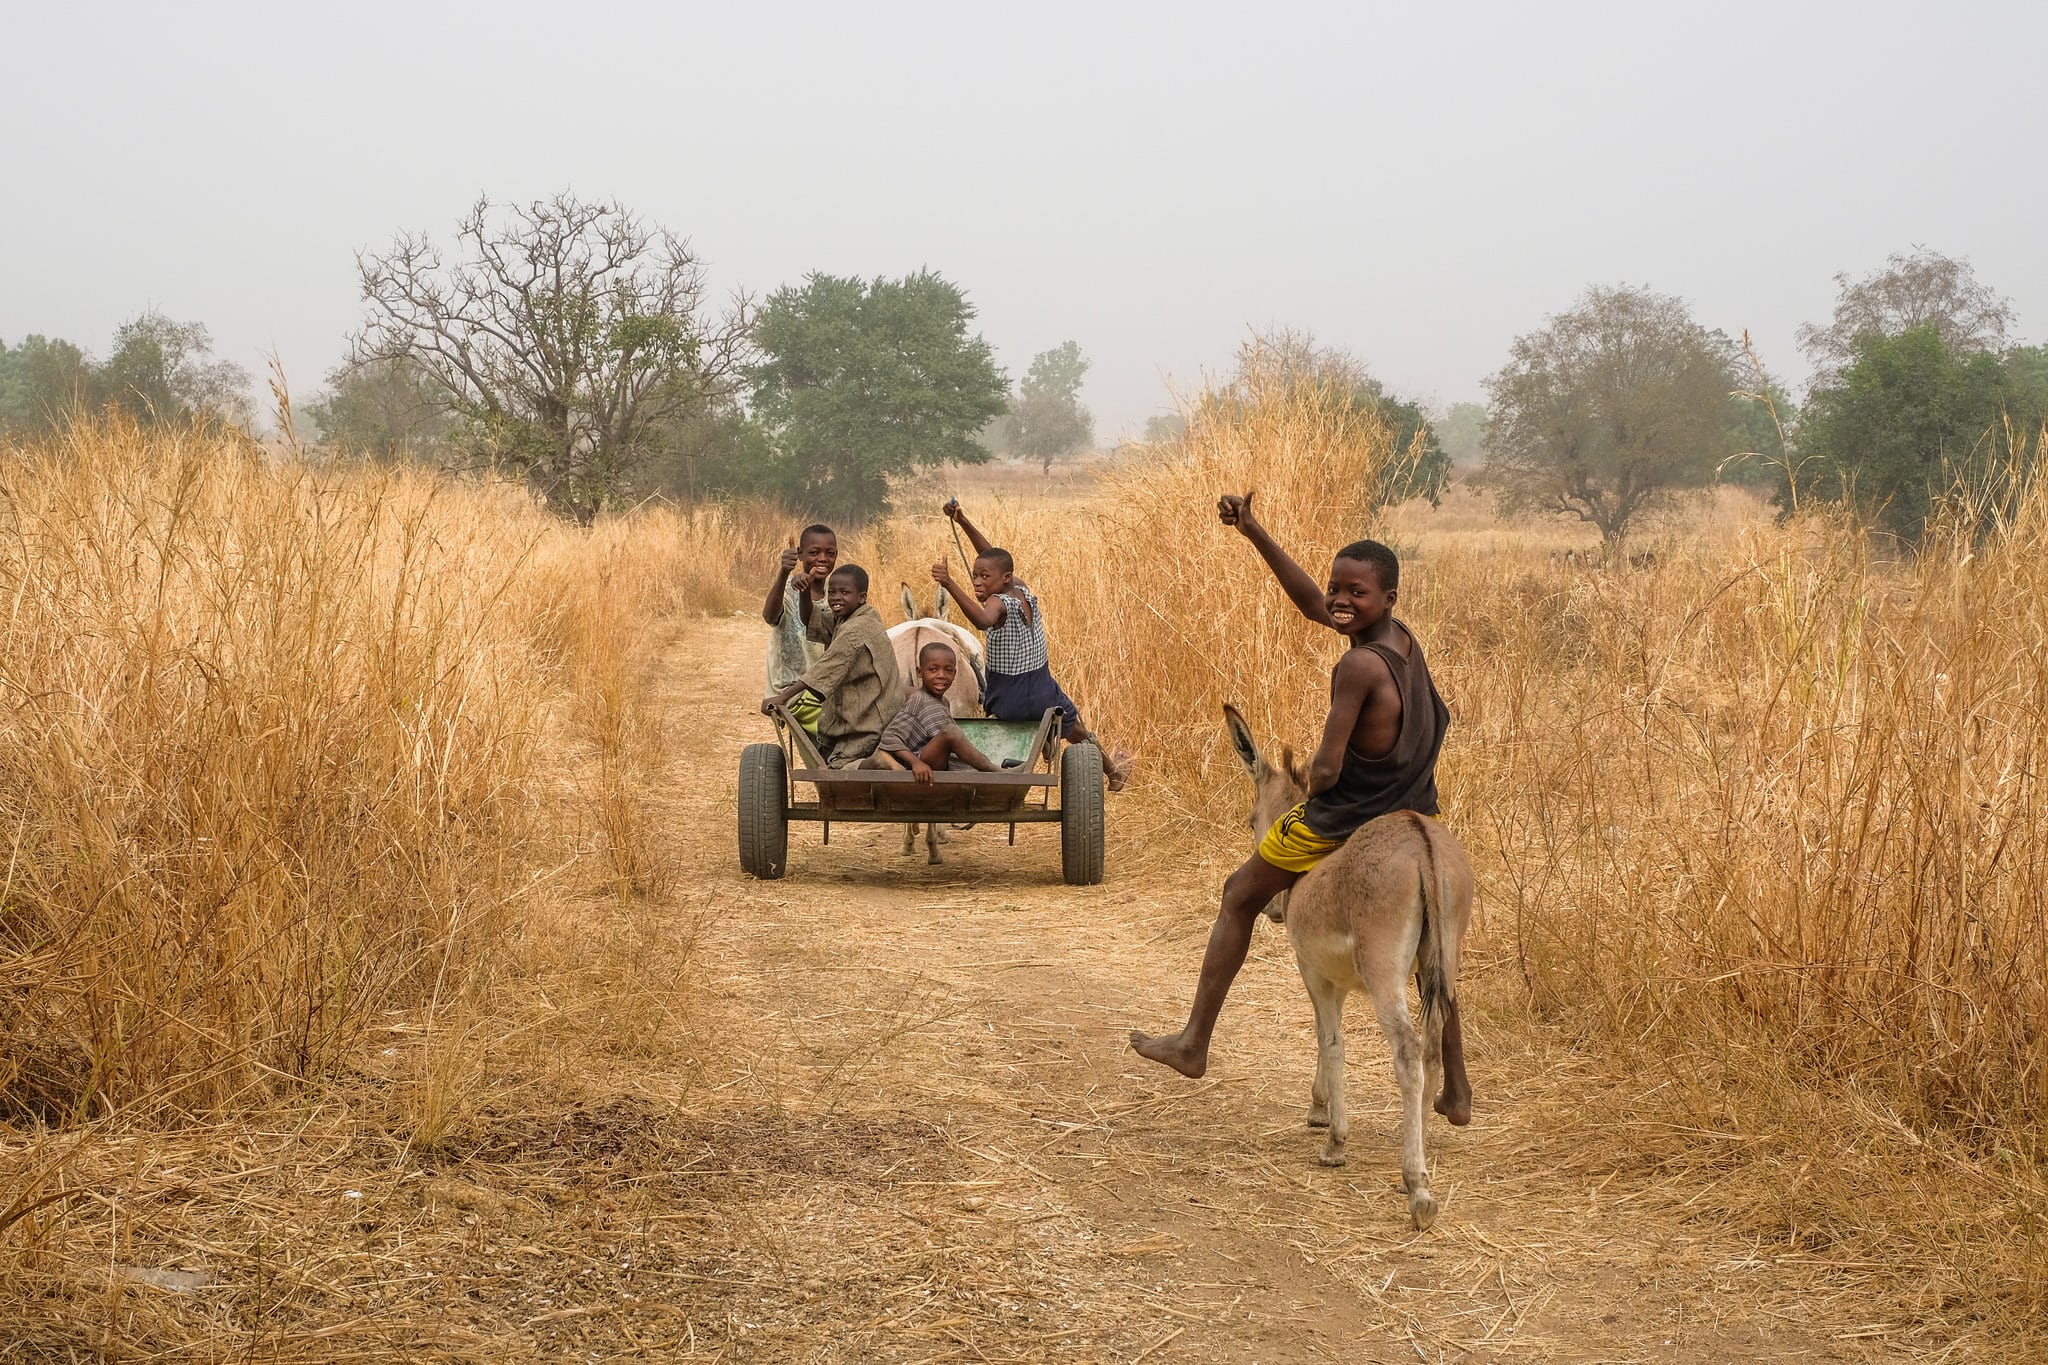 Trasporto agricolo via asino a Gwenia, Kassena Nankana District - Ghana. Immagine dell'utente Flickr Axel Fassio/CIFOR su licenza CC